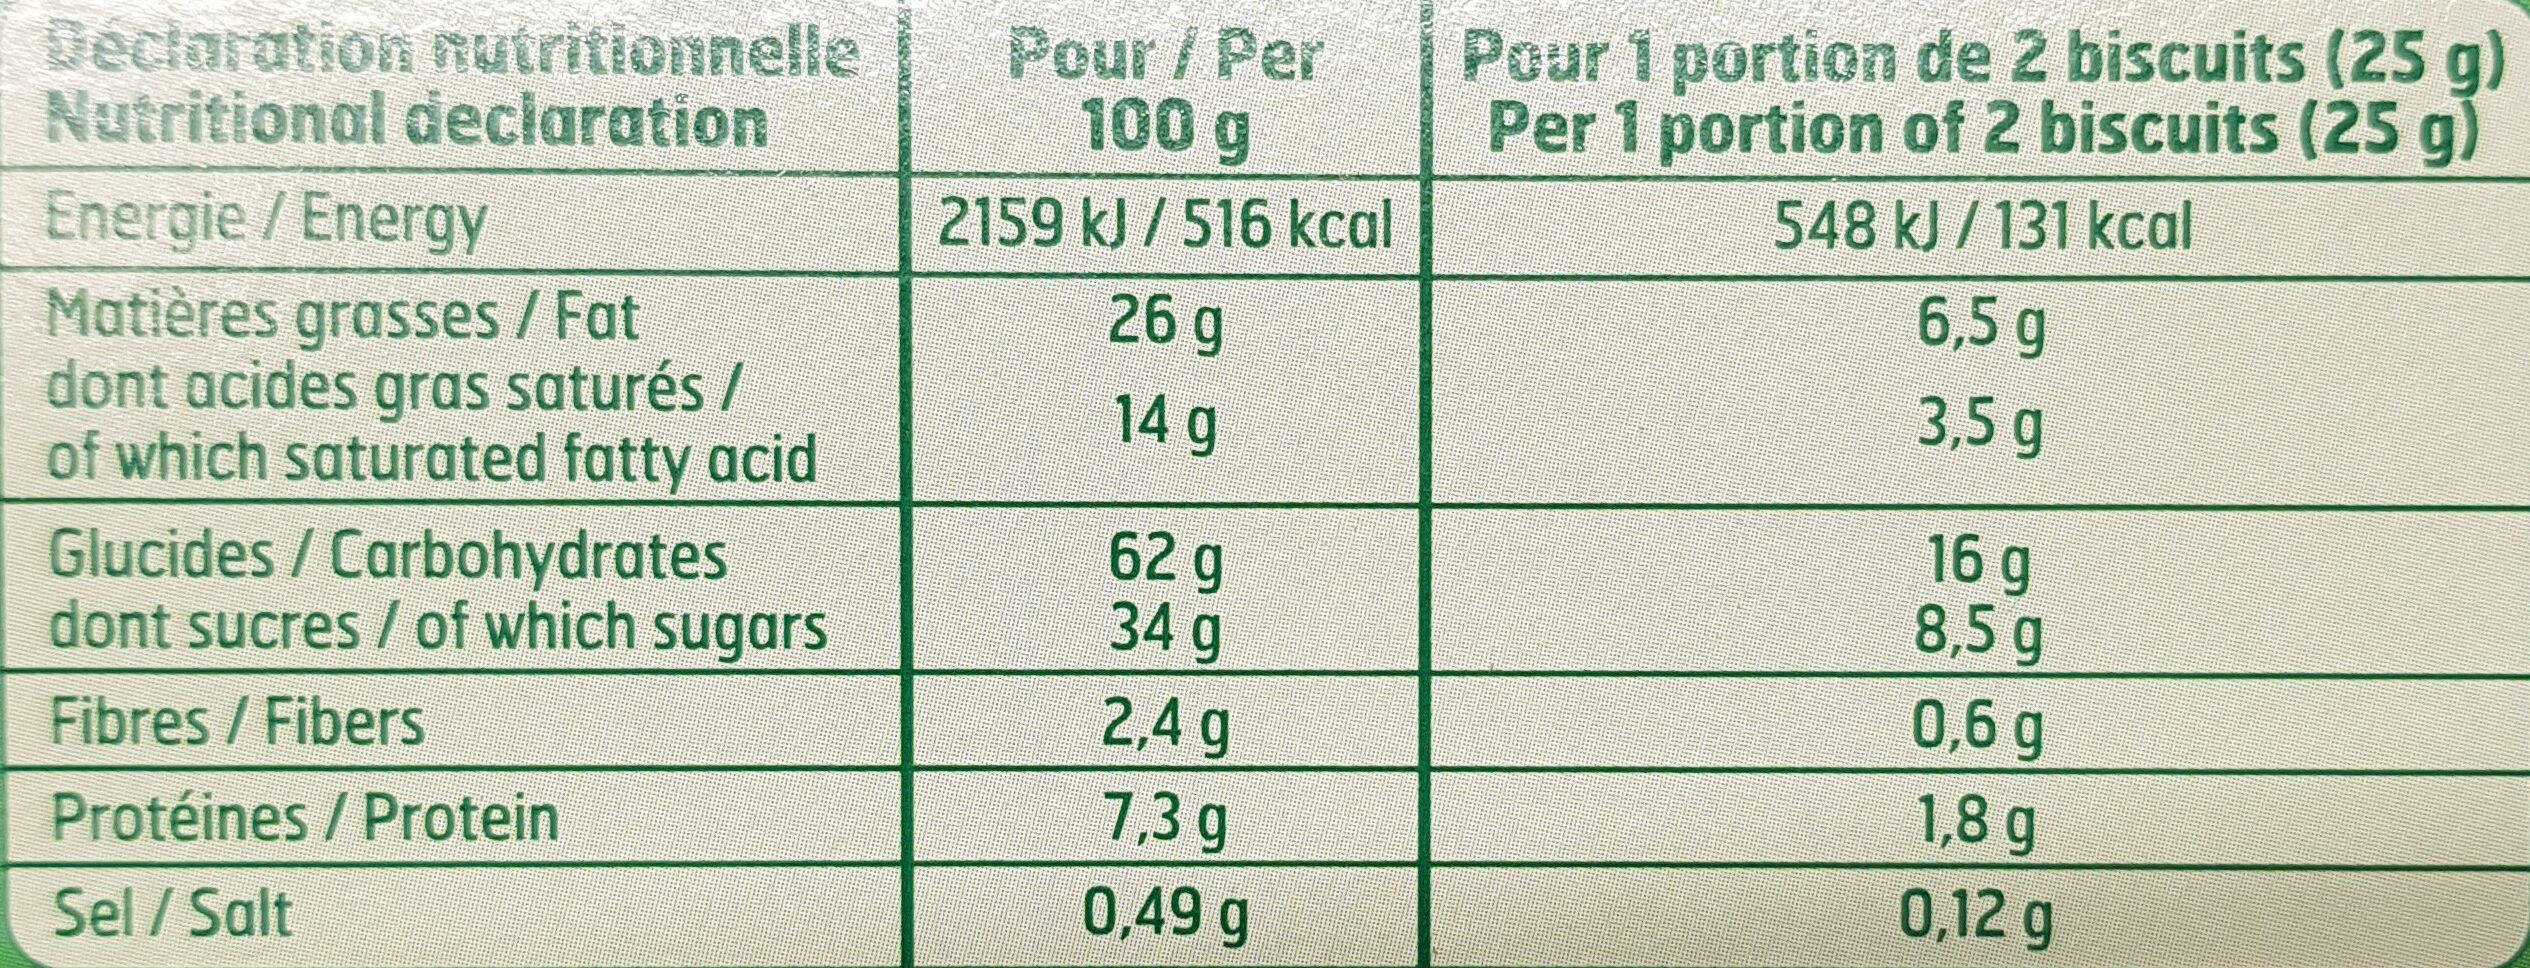 Boscuits tablette au chocolat au lait - Tableau nutritionnel